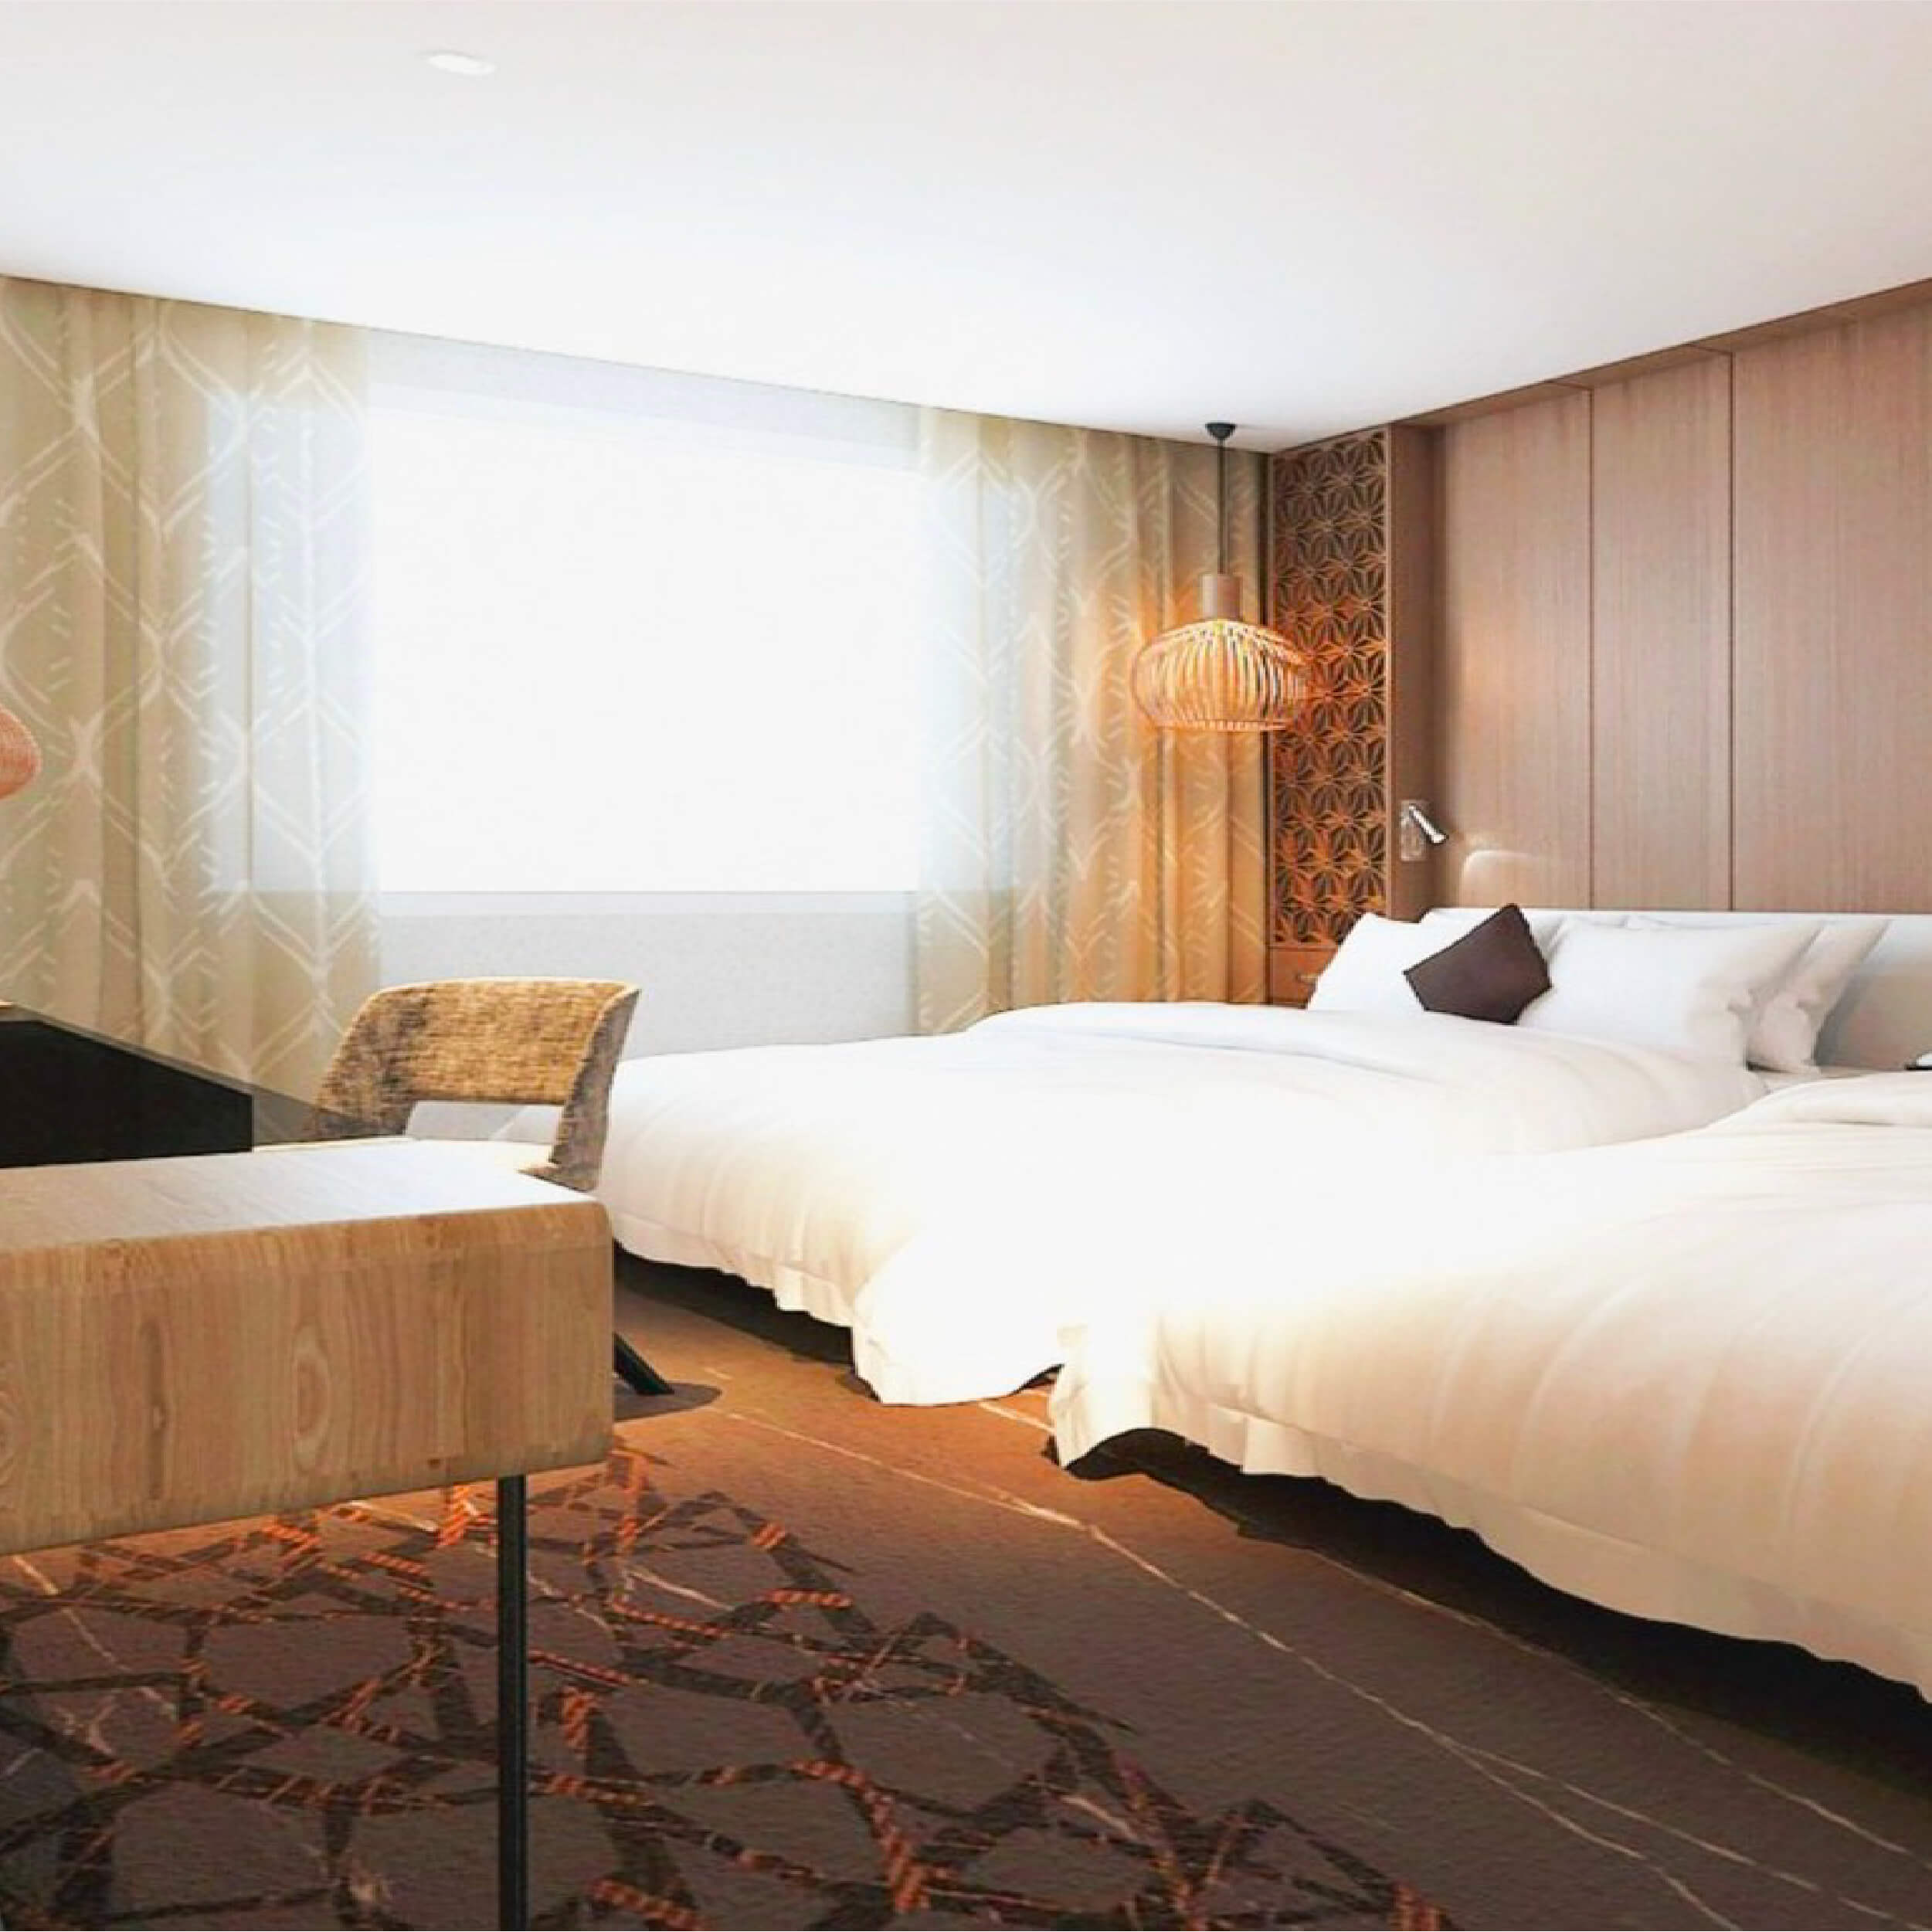 台南夏都城旅HOTEL CHATEAU的沐浴備品是使用Sunlife晨居的紐西蘭品牌Antipodes系列沐浴用品系列